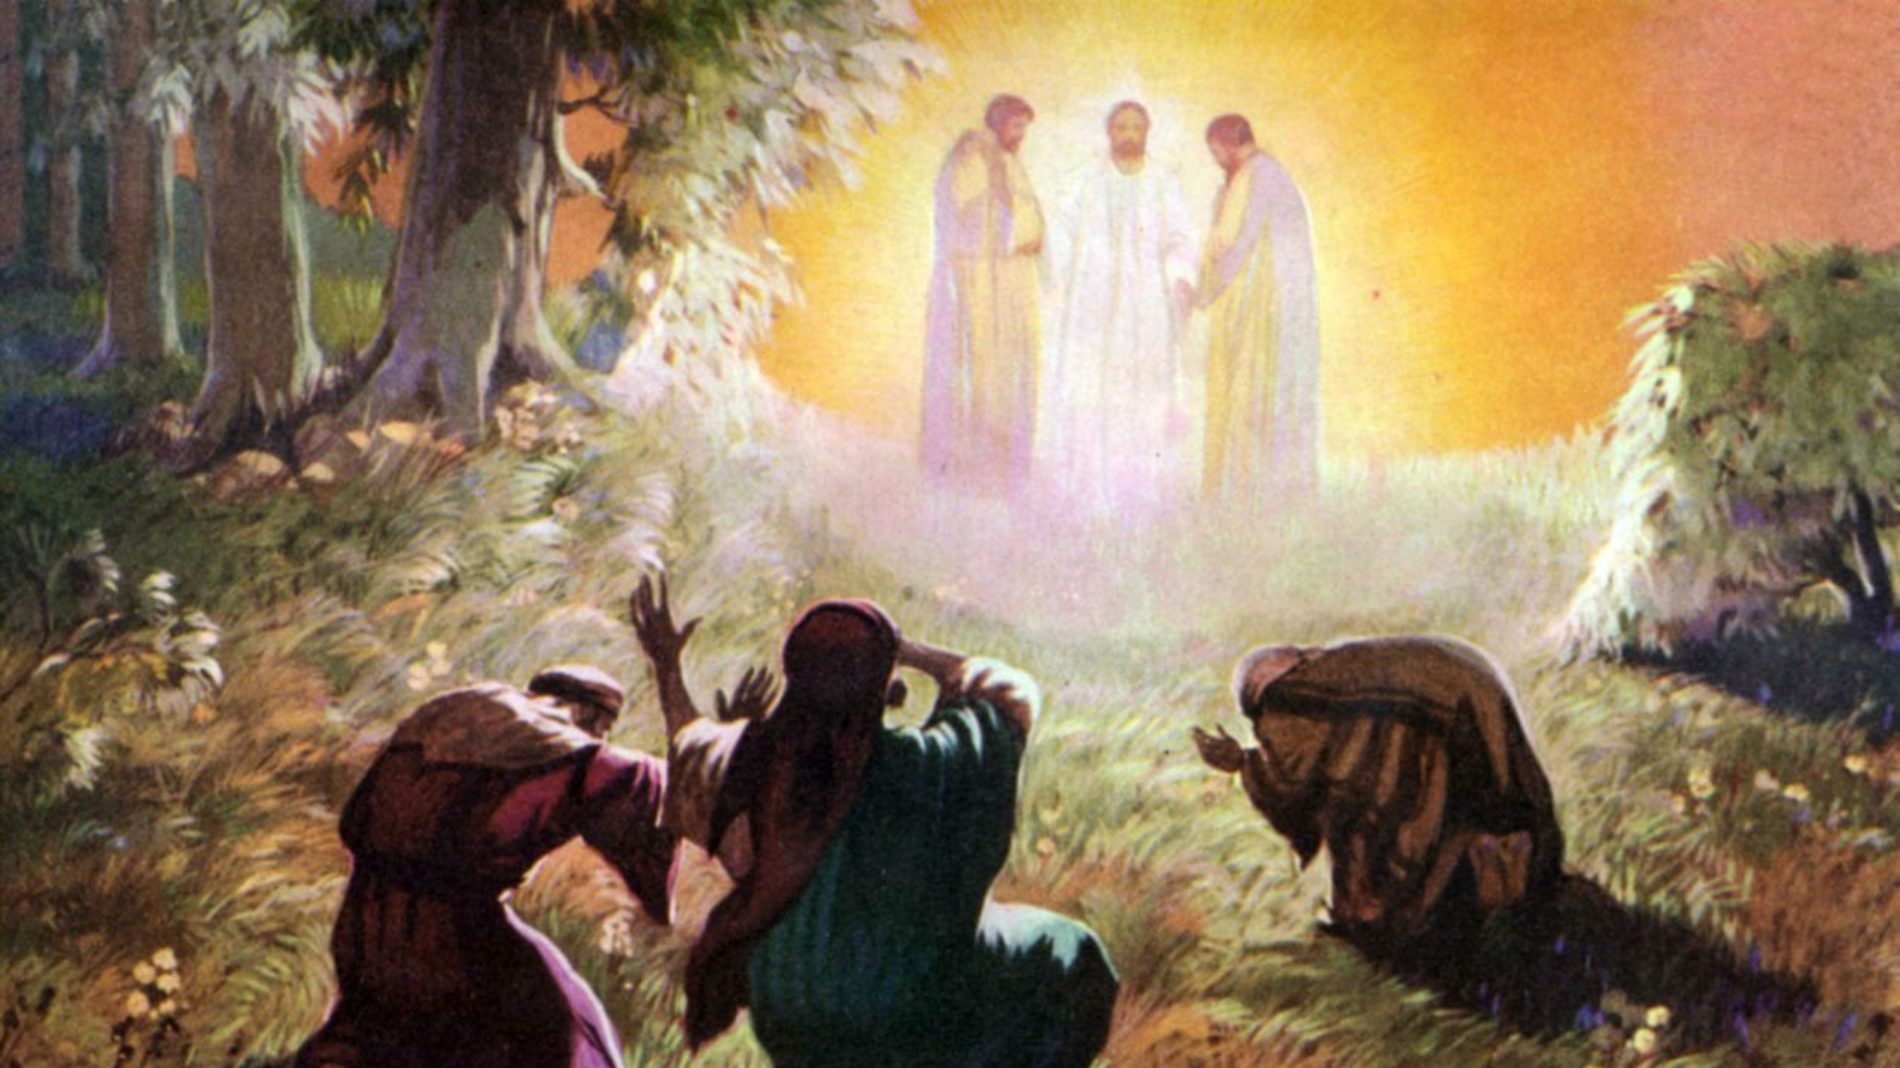 Na transfiguração Jesus se encontrou com Moisés e Elias: como isso foi possível?